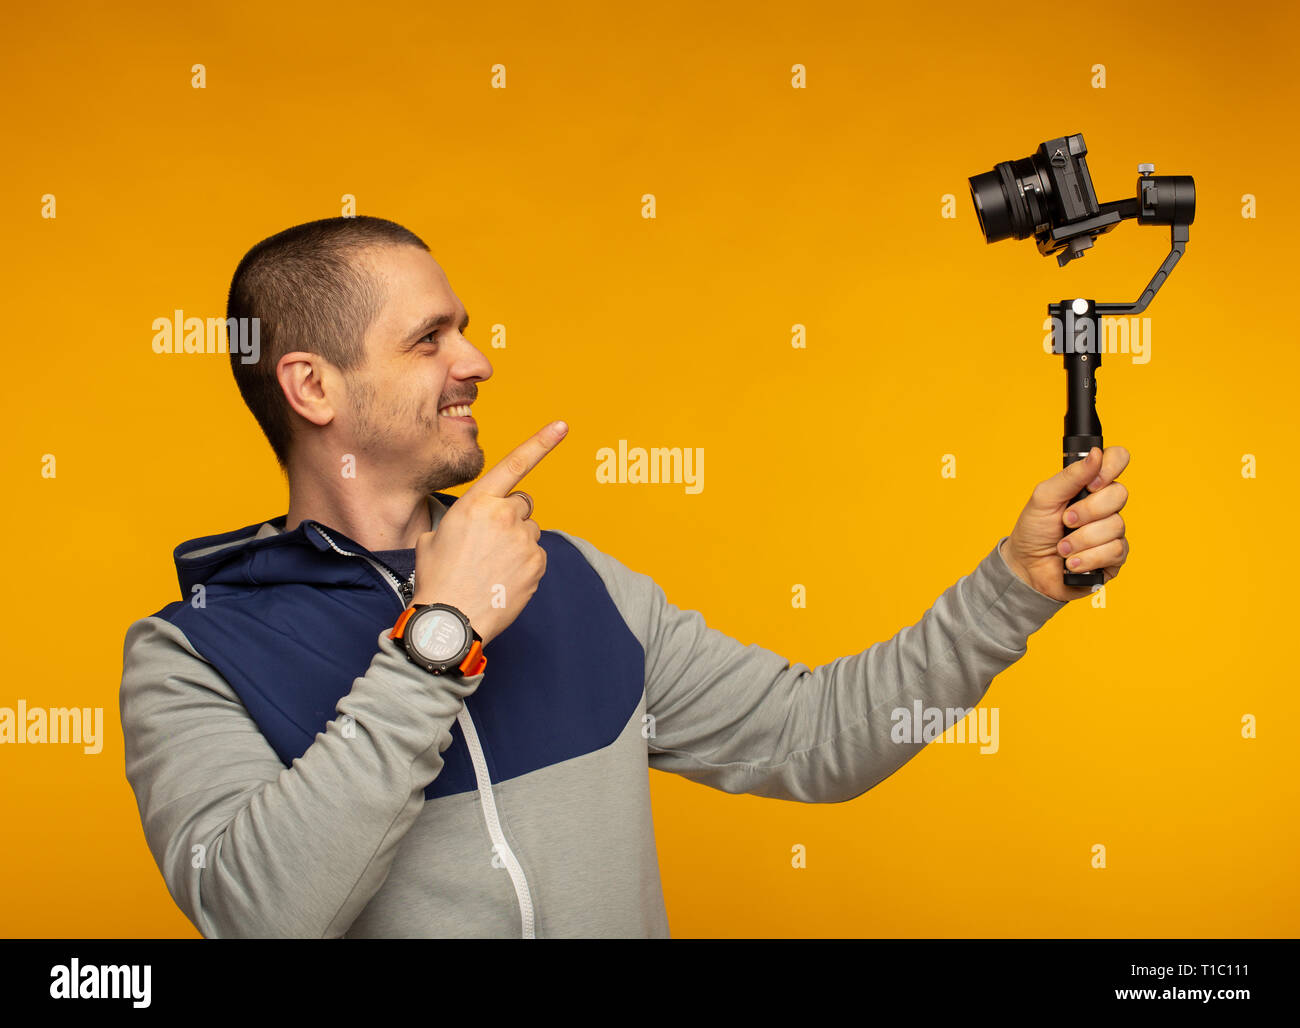 Hombre video blogger apuntando a la cámara y filmar hisself Foto de stock